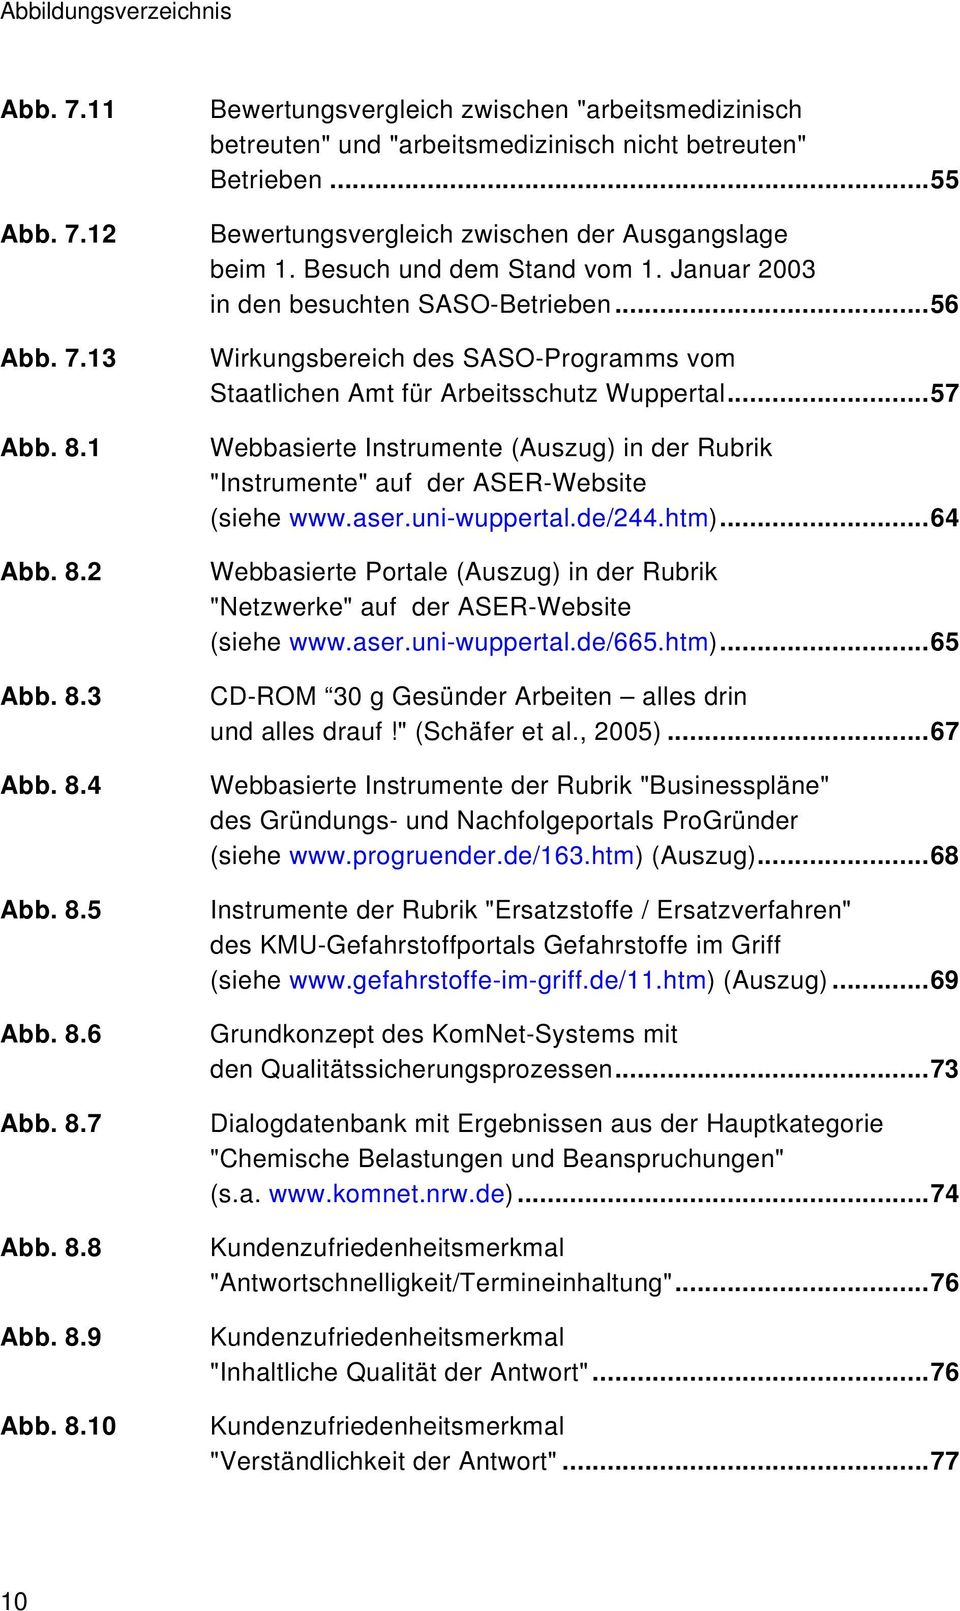 ..56 Wirkungsbereich des SASO-Programms vom Staatlichen Amt für Arbeitsschutz Wuppertal...57 Webbasierte Instrumente (Auszug) in der Rubrik "Instrumente" auf der ASER-Website (siehe www.aser.